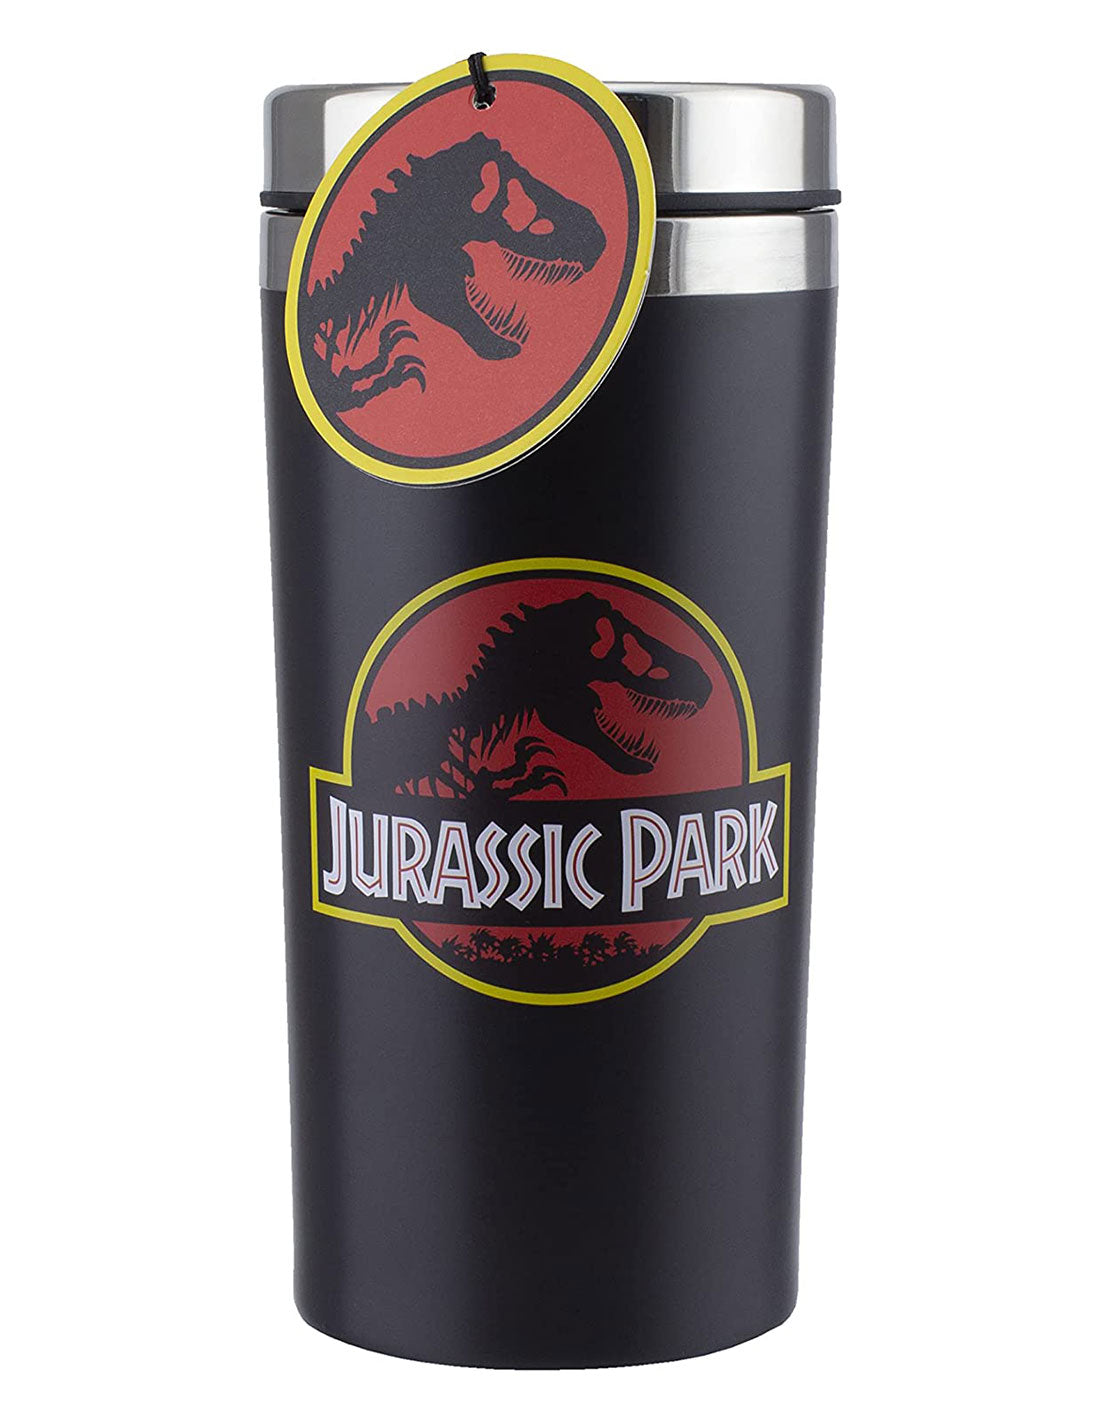 Jurassic Park travel mug